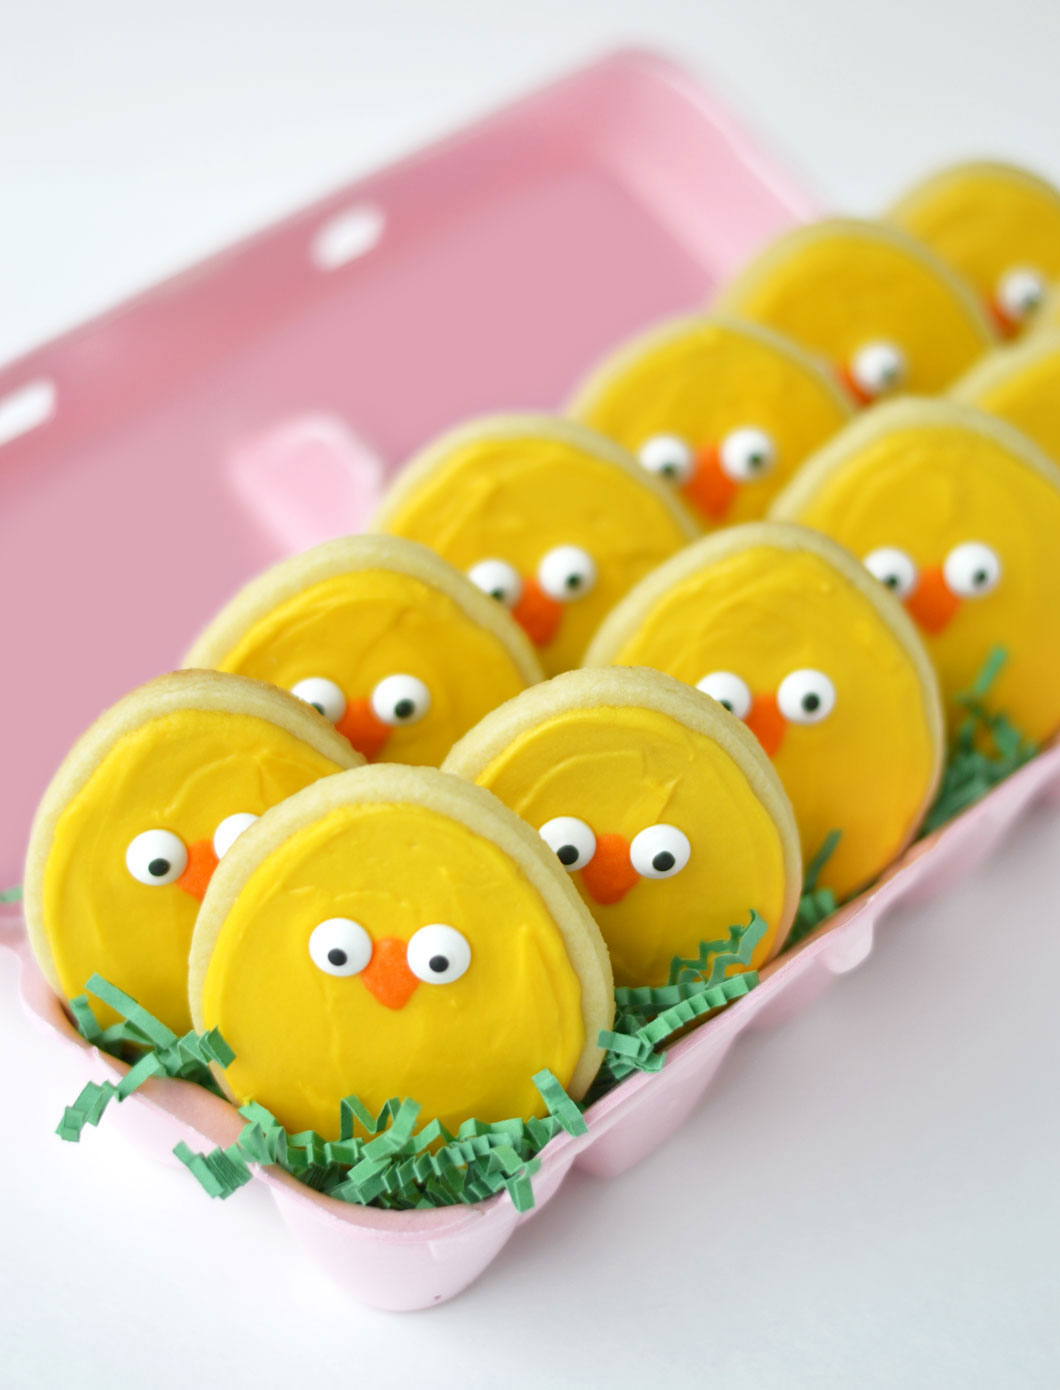 Easy Easter Chicks Cookies à la Cheryl’s - Sprinkles Studio